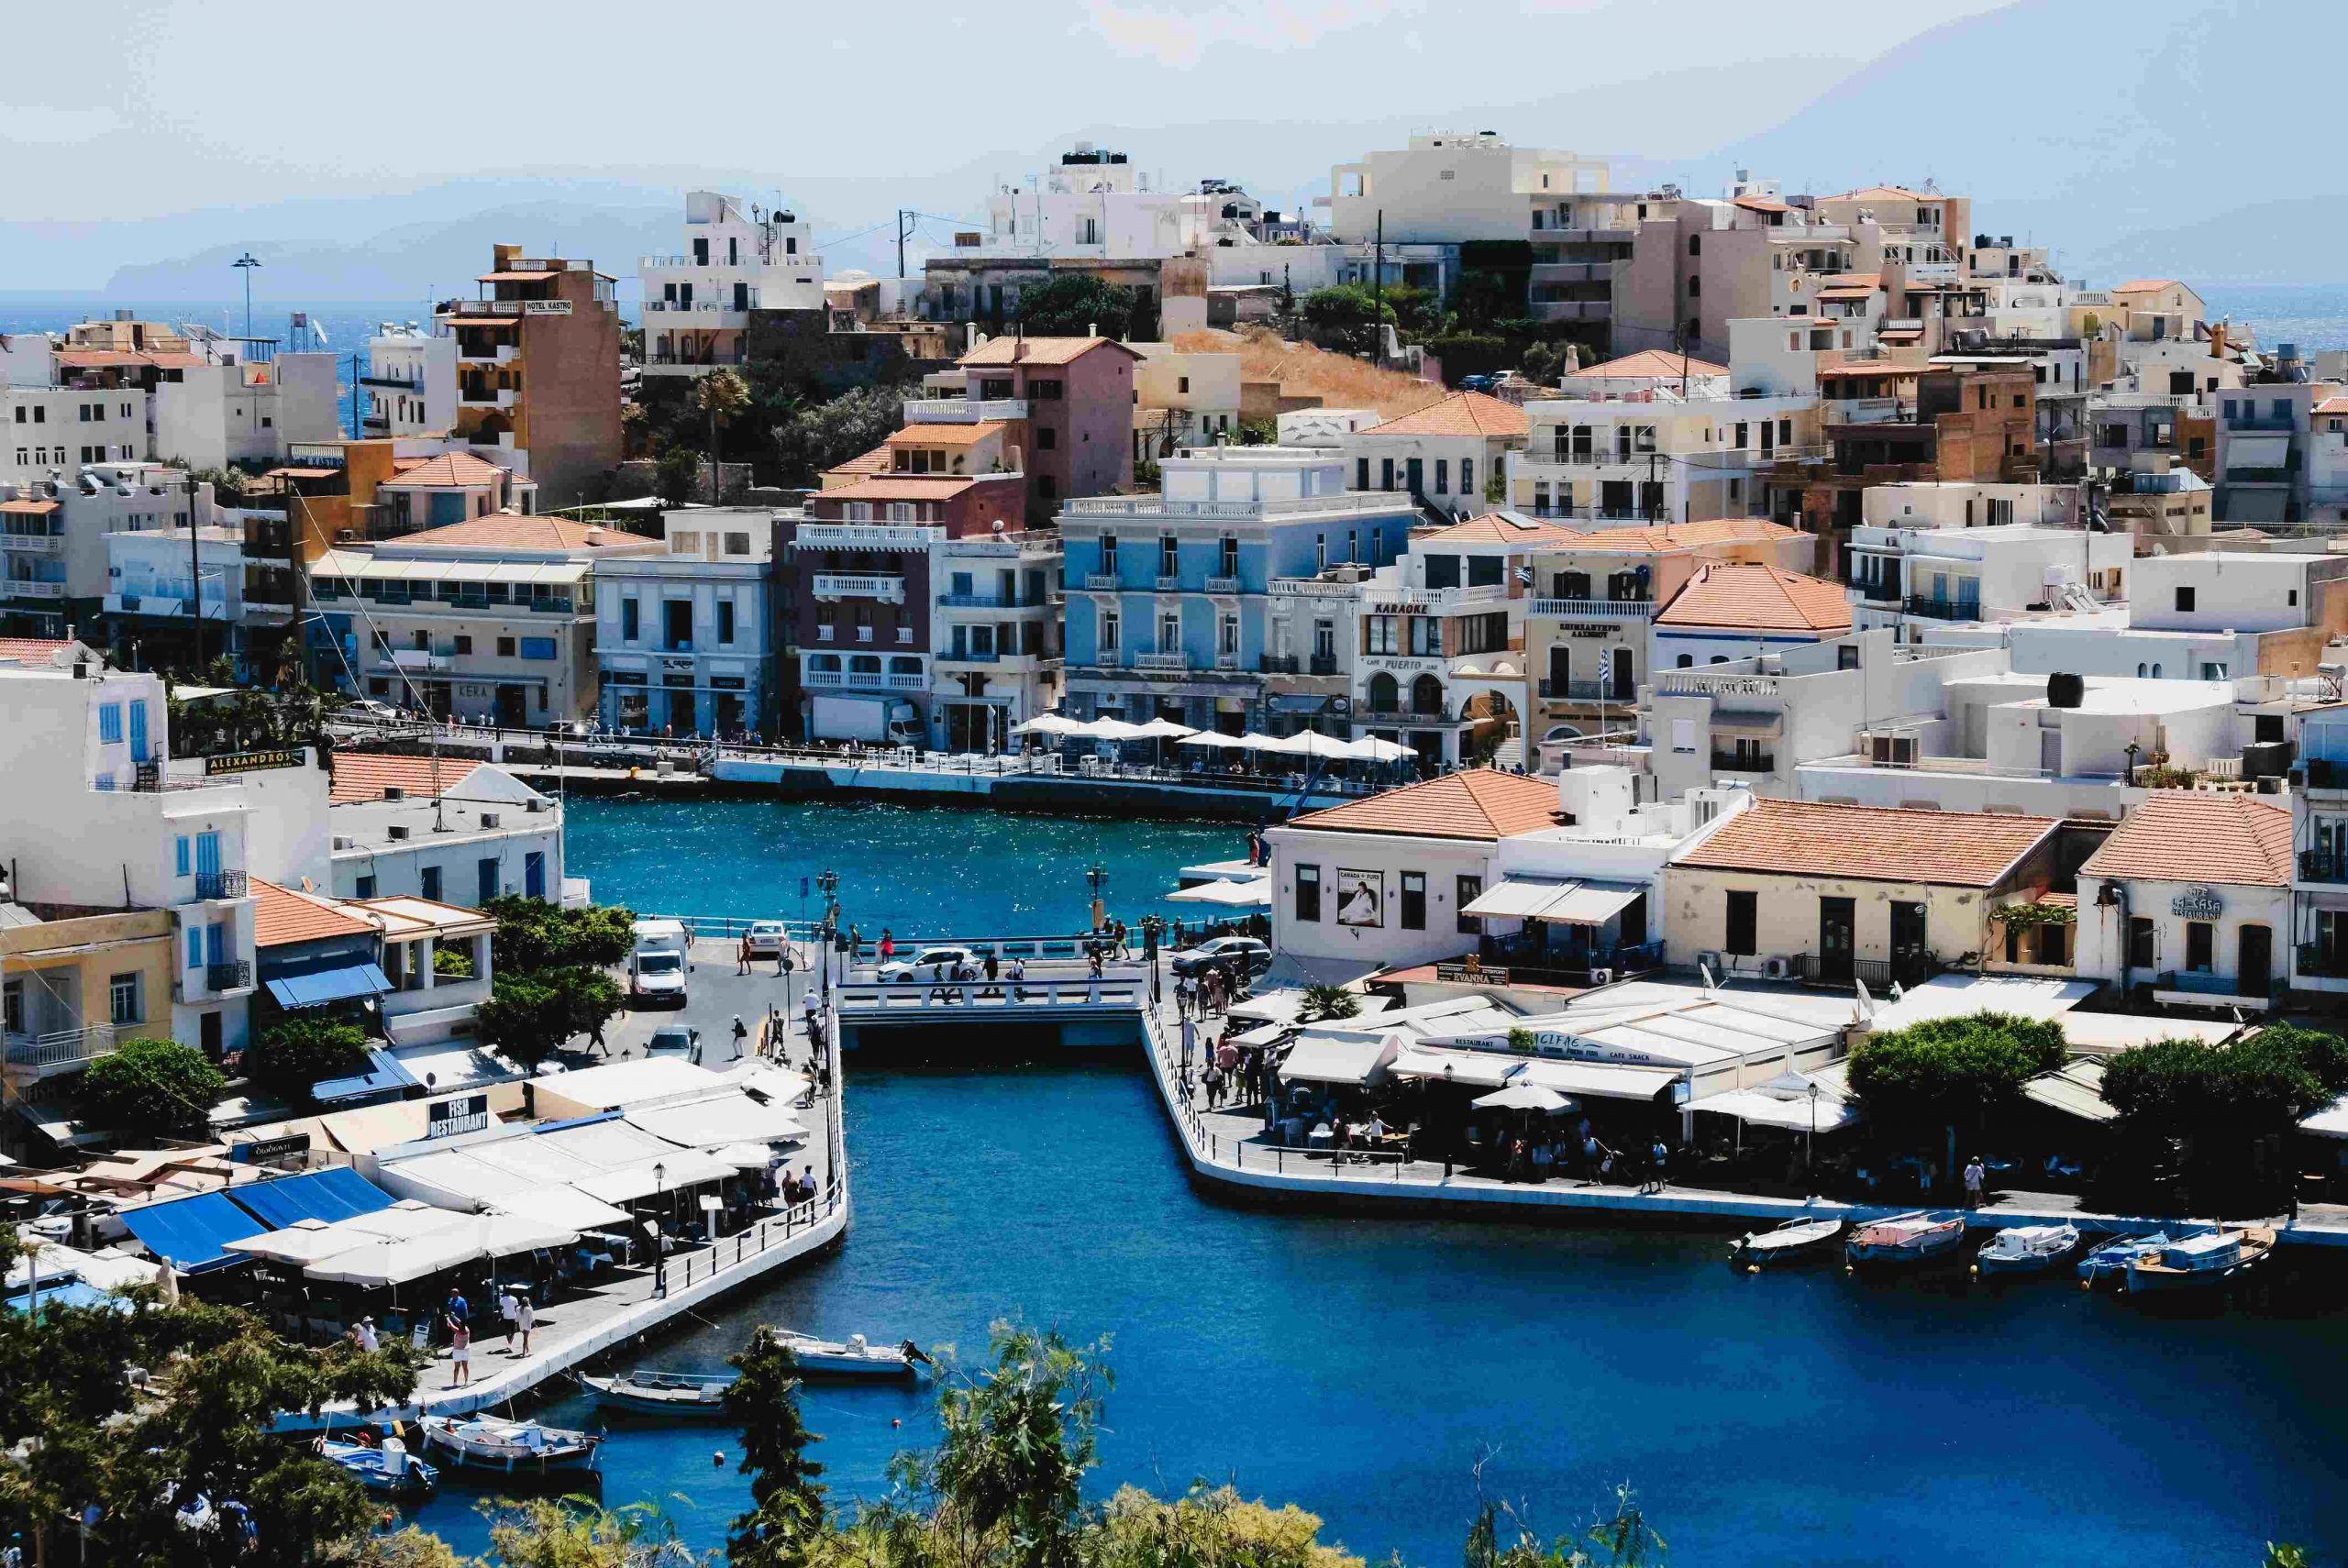 miasteczko na krecie Agios Nikolaos, urokliwe miejsce nad morzem i port